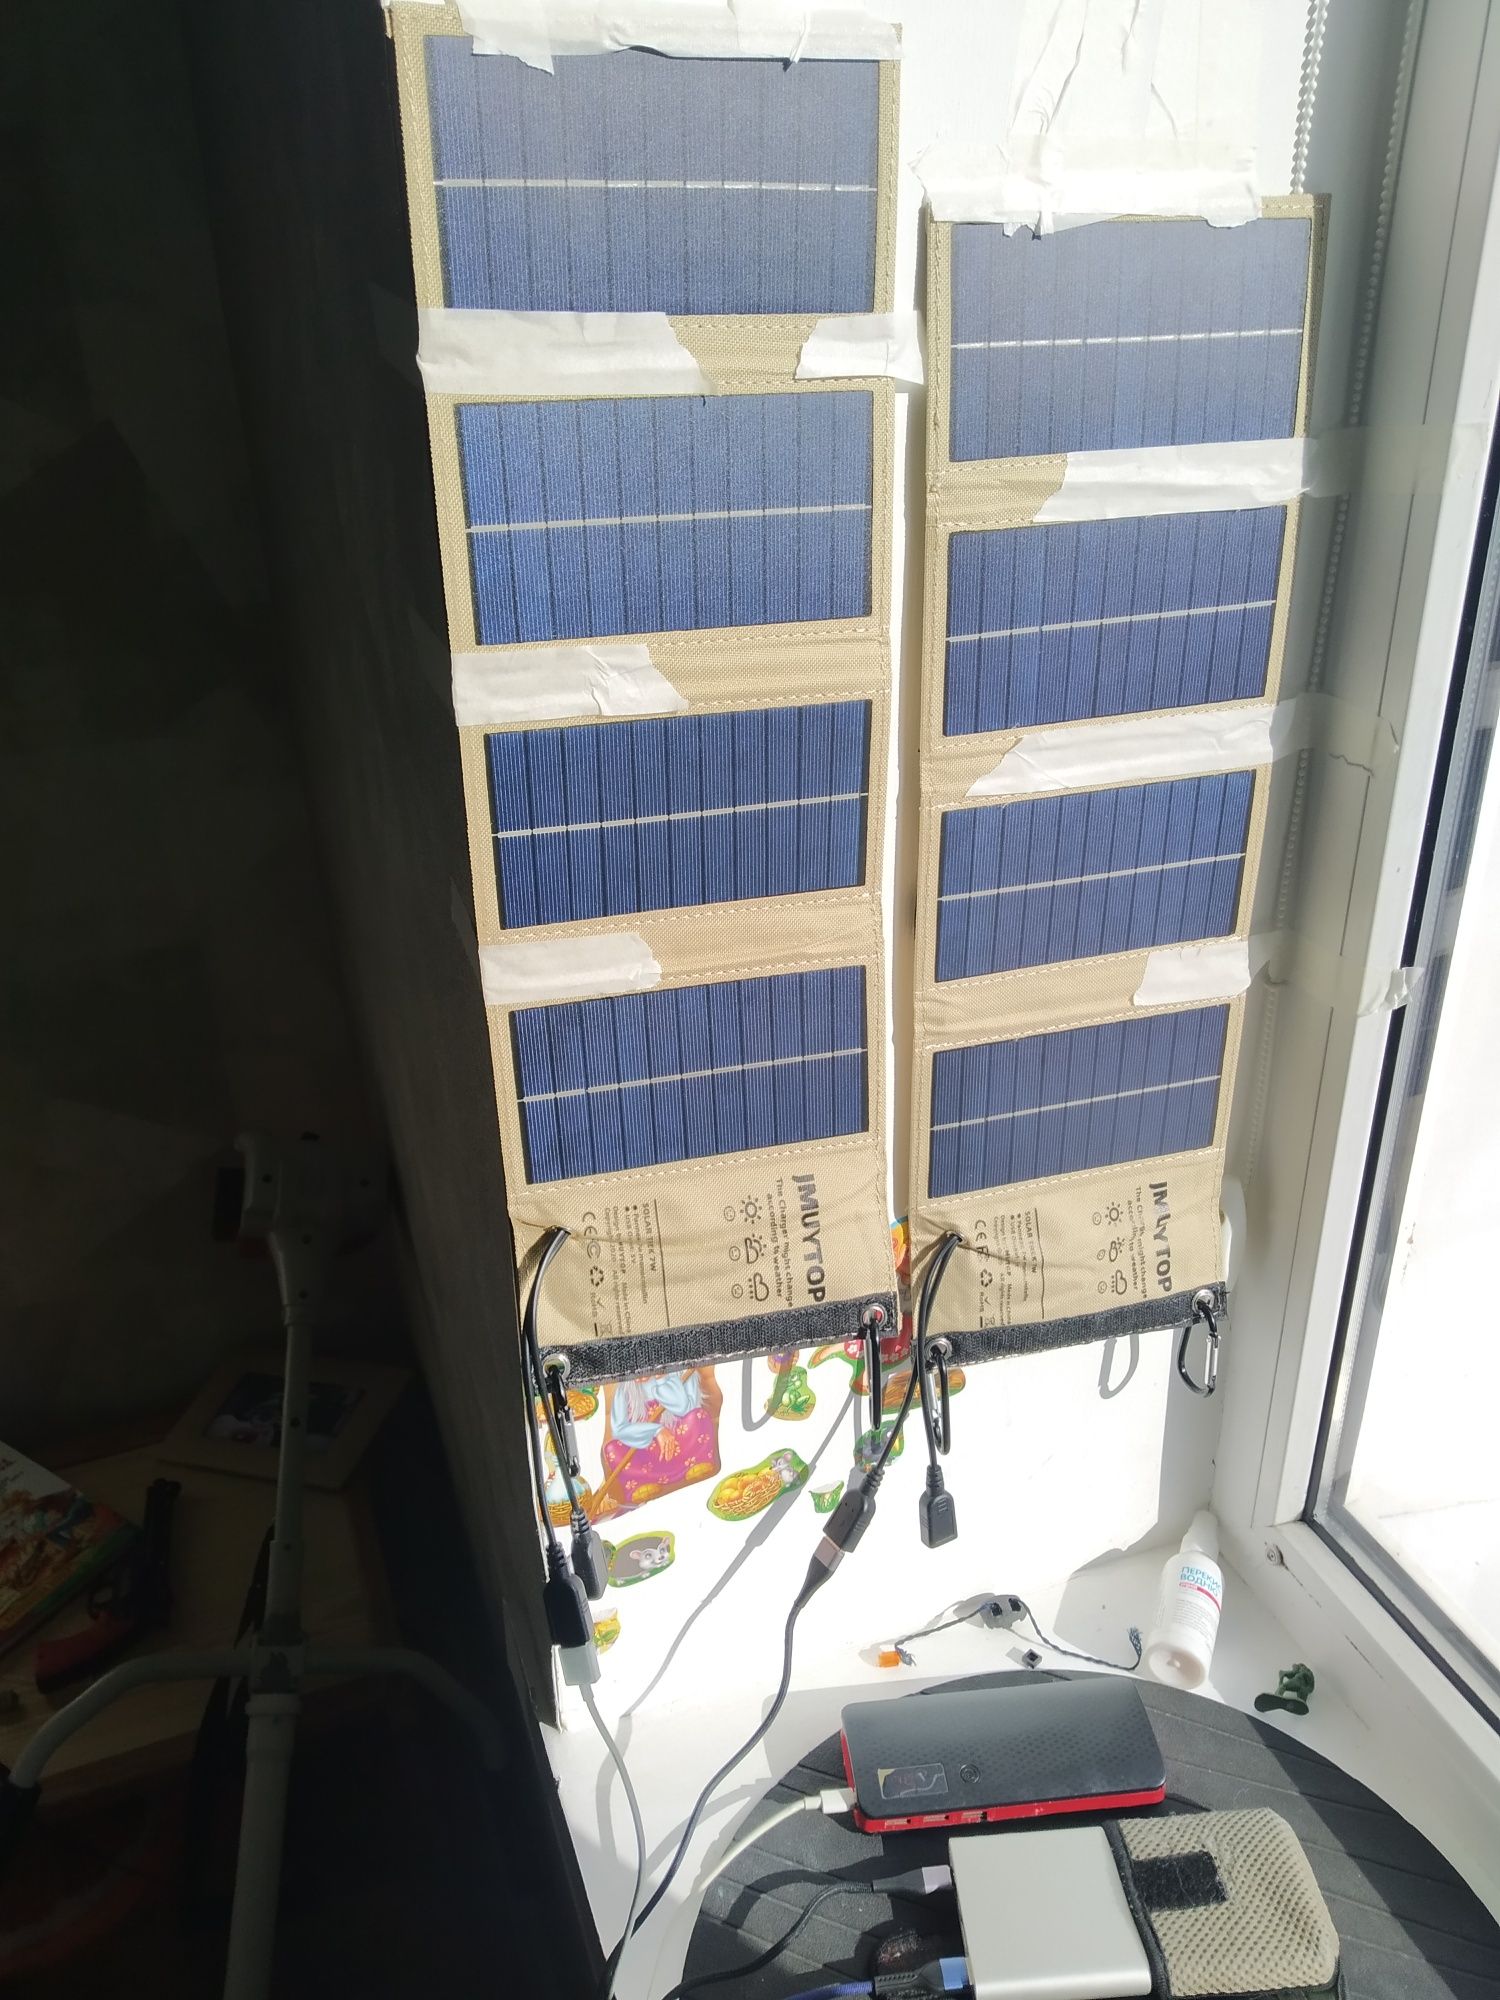 Продам сонячну панель